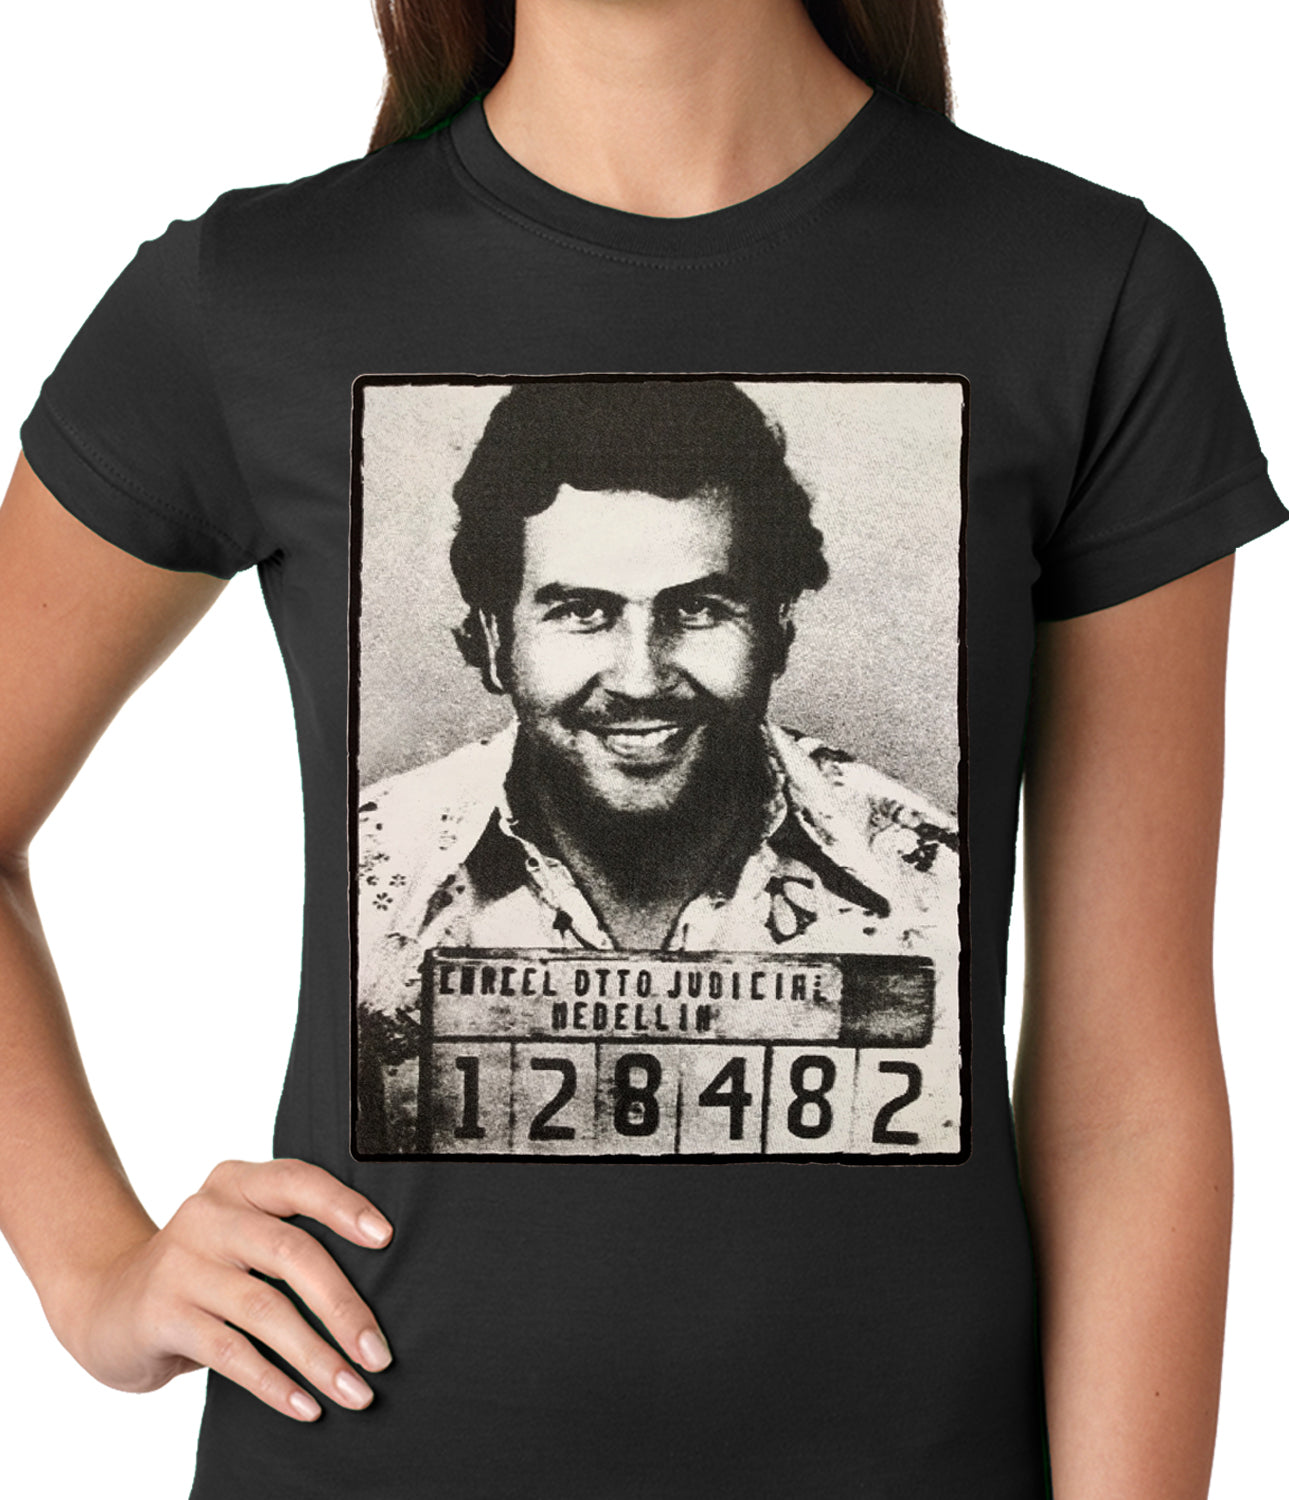 Pablo Escobar Smiling Mug Shot Ladies T-shirt